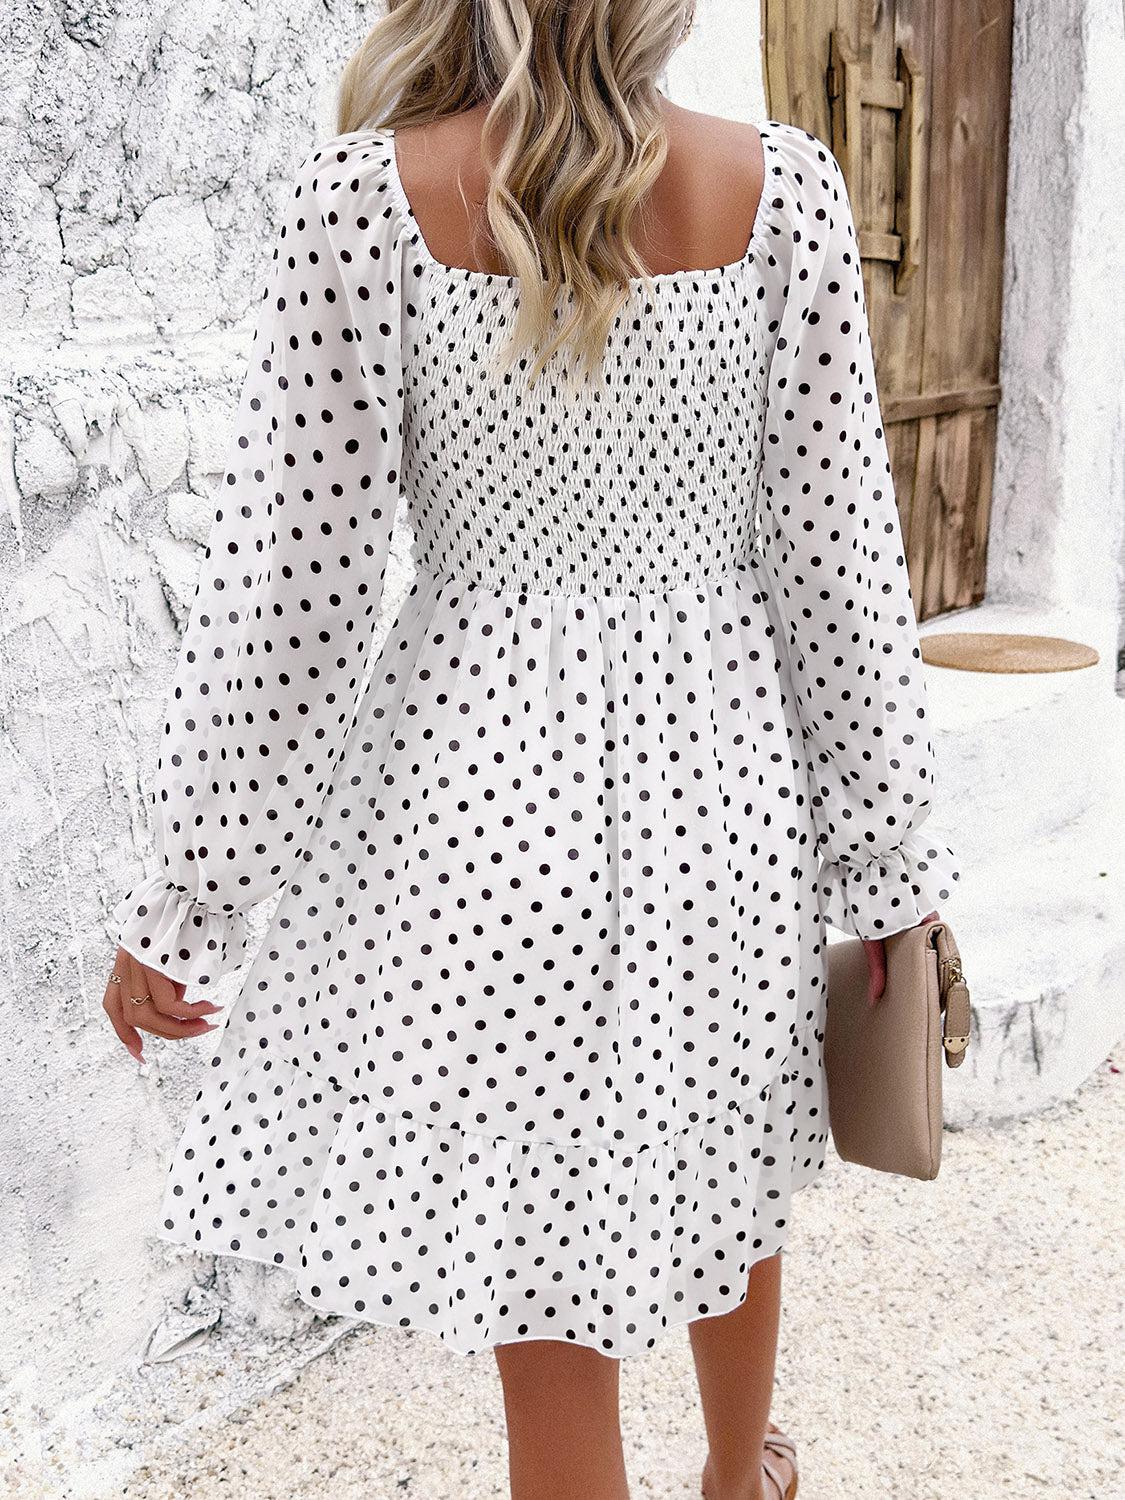 a woman in a white polka dot dress